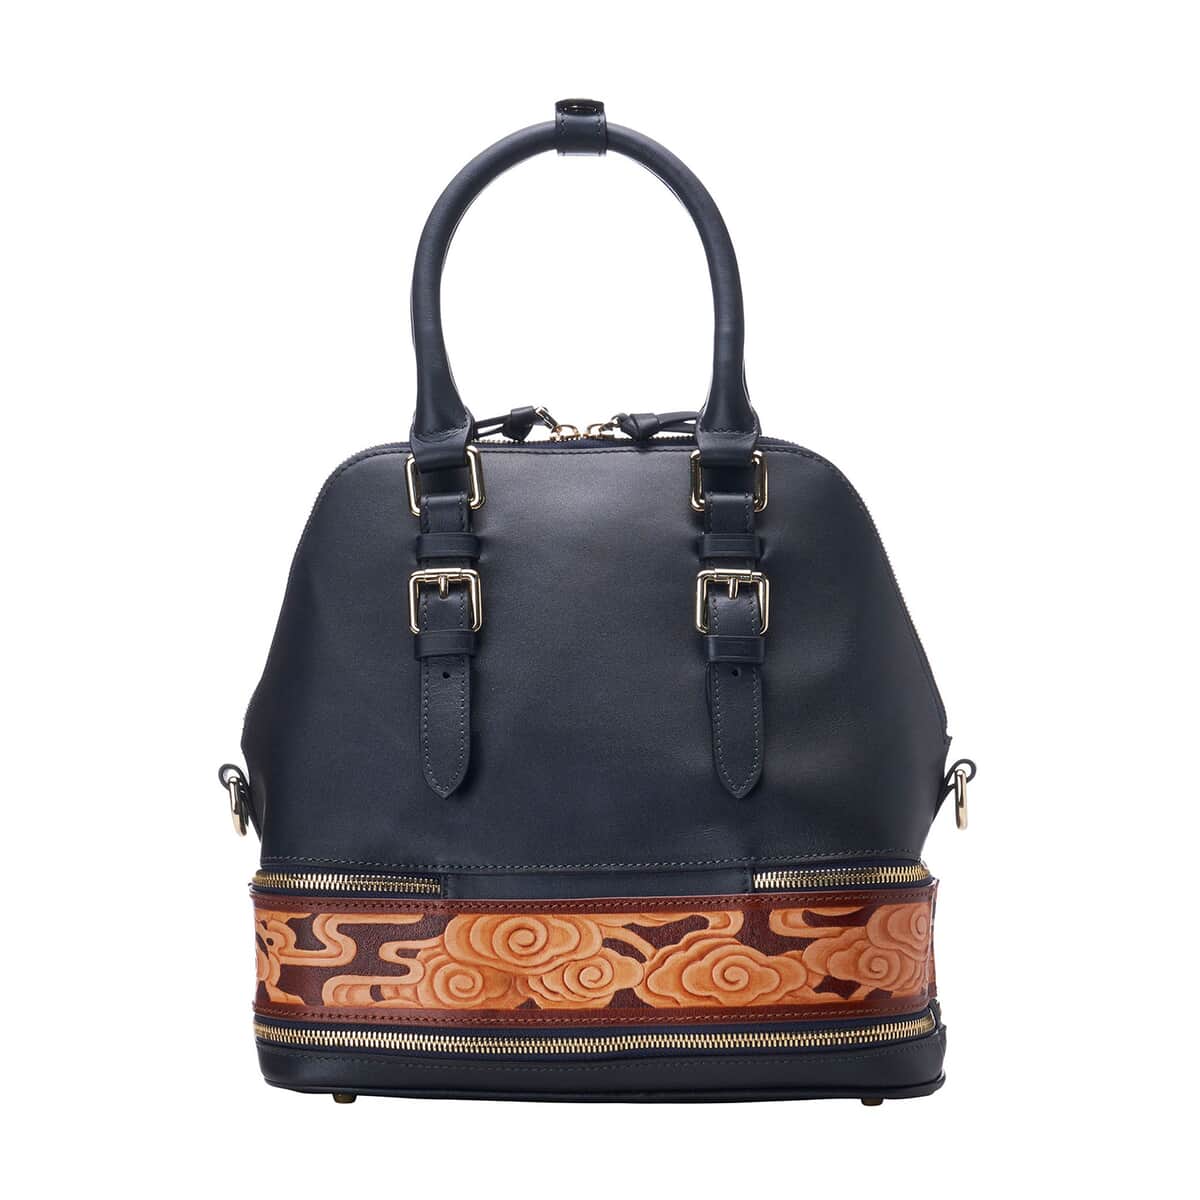 Bellorita-Cloud Blue Top Grain Leather Mini Satchel | Leather Satchel Bag for Women | Leather Purse Handbag image number 5